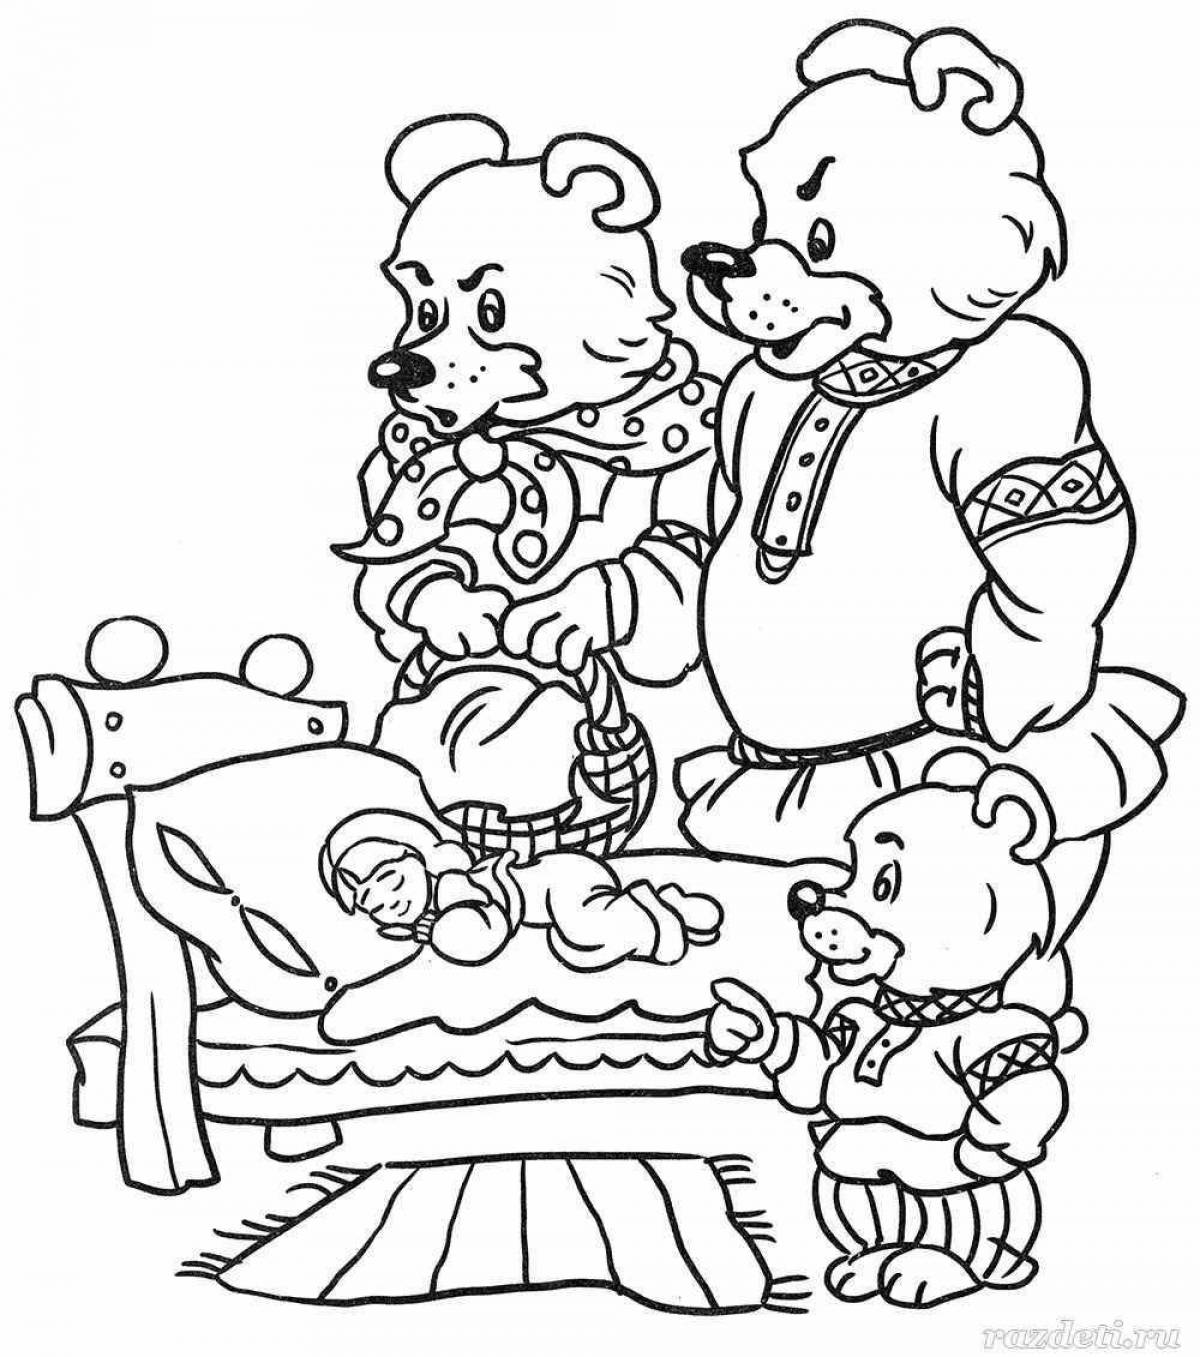 Three bears cute coloring book